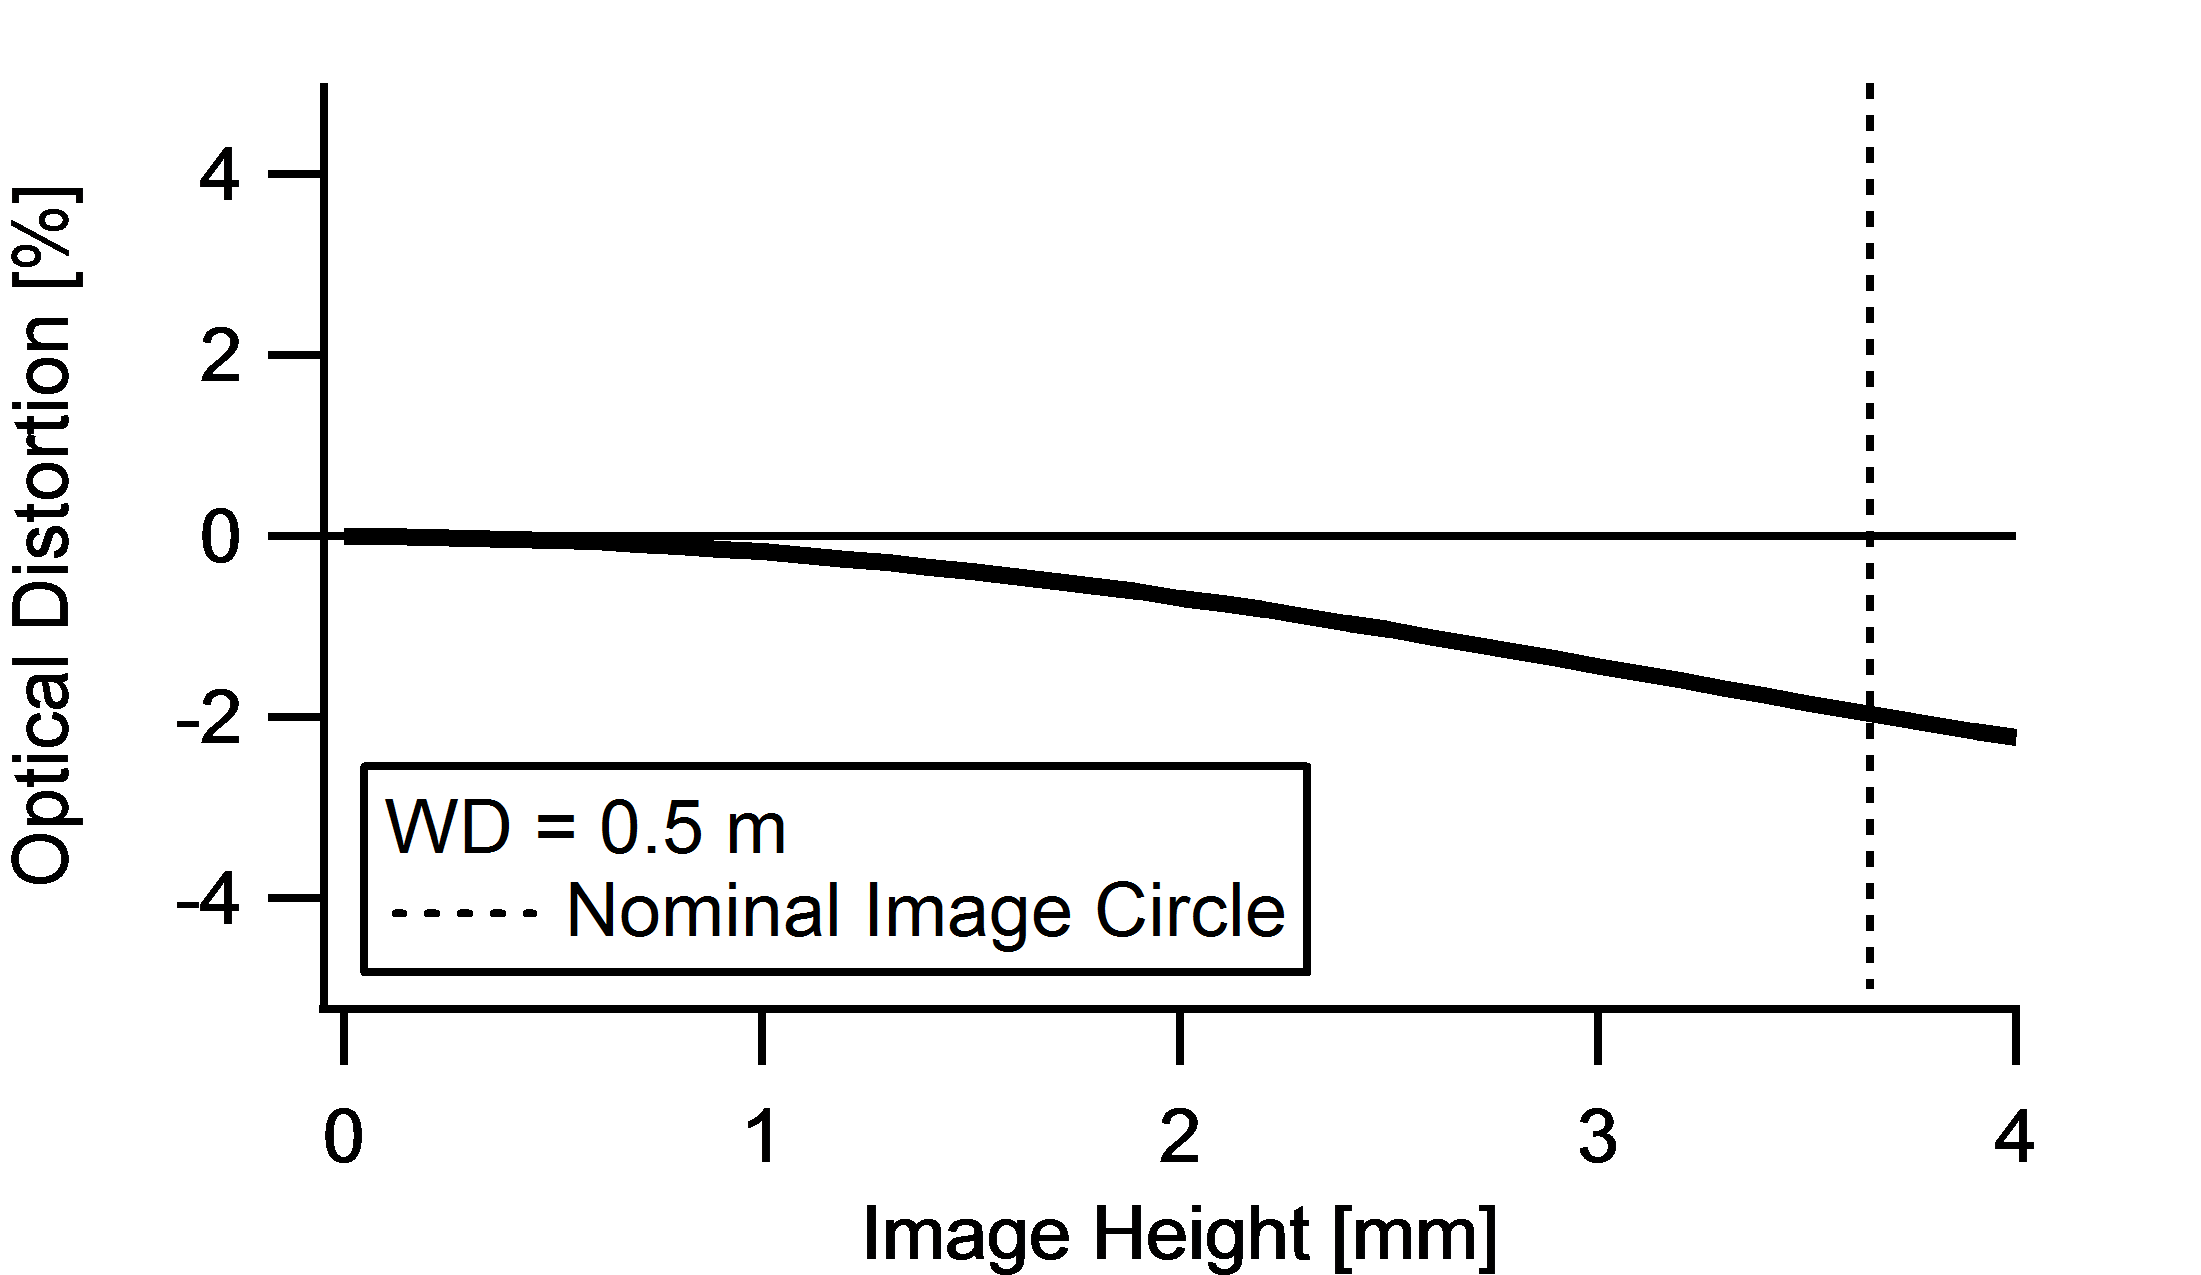 Distortion versus Image Height